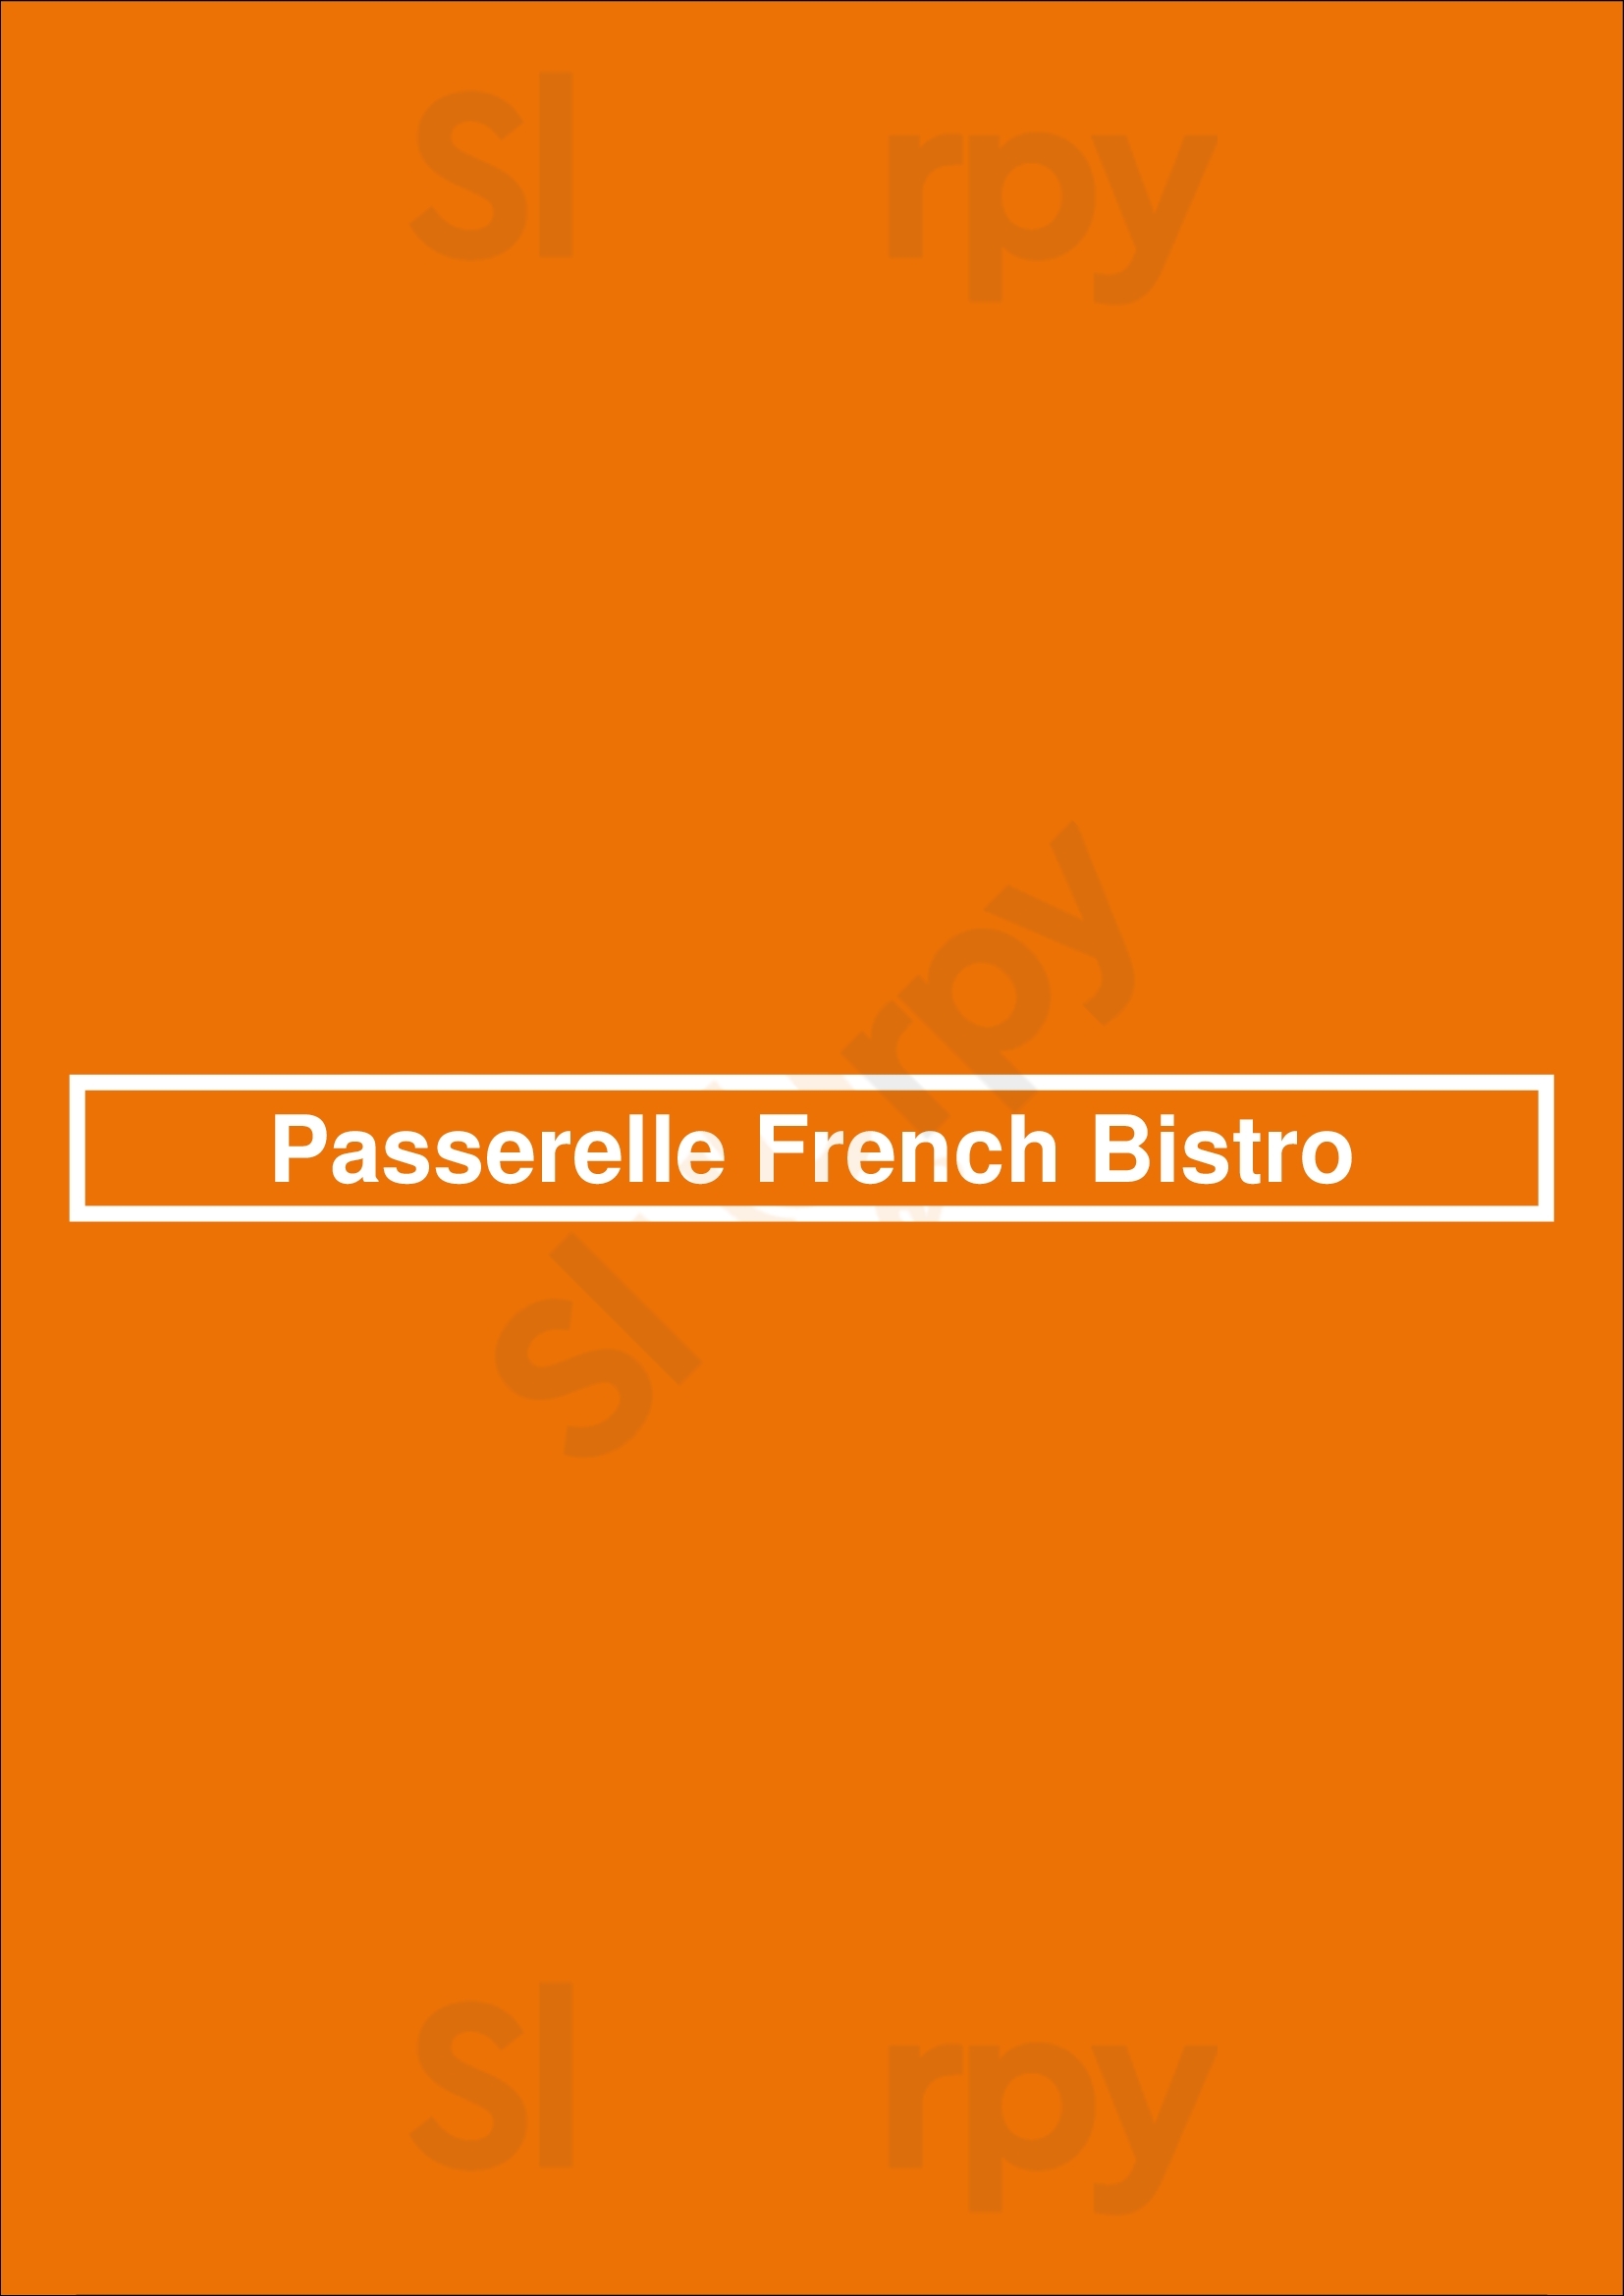 Passerelle French Bistro Greenville Menu - 1